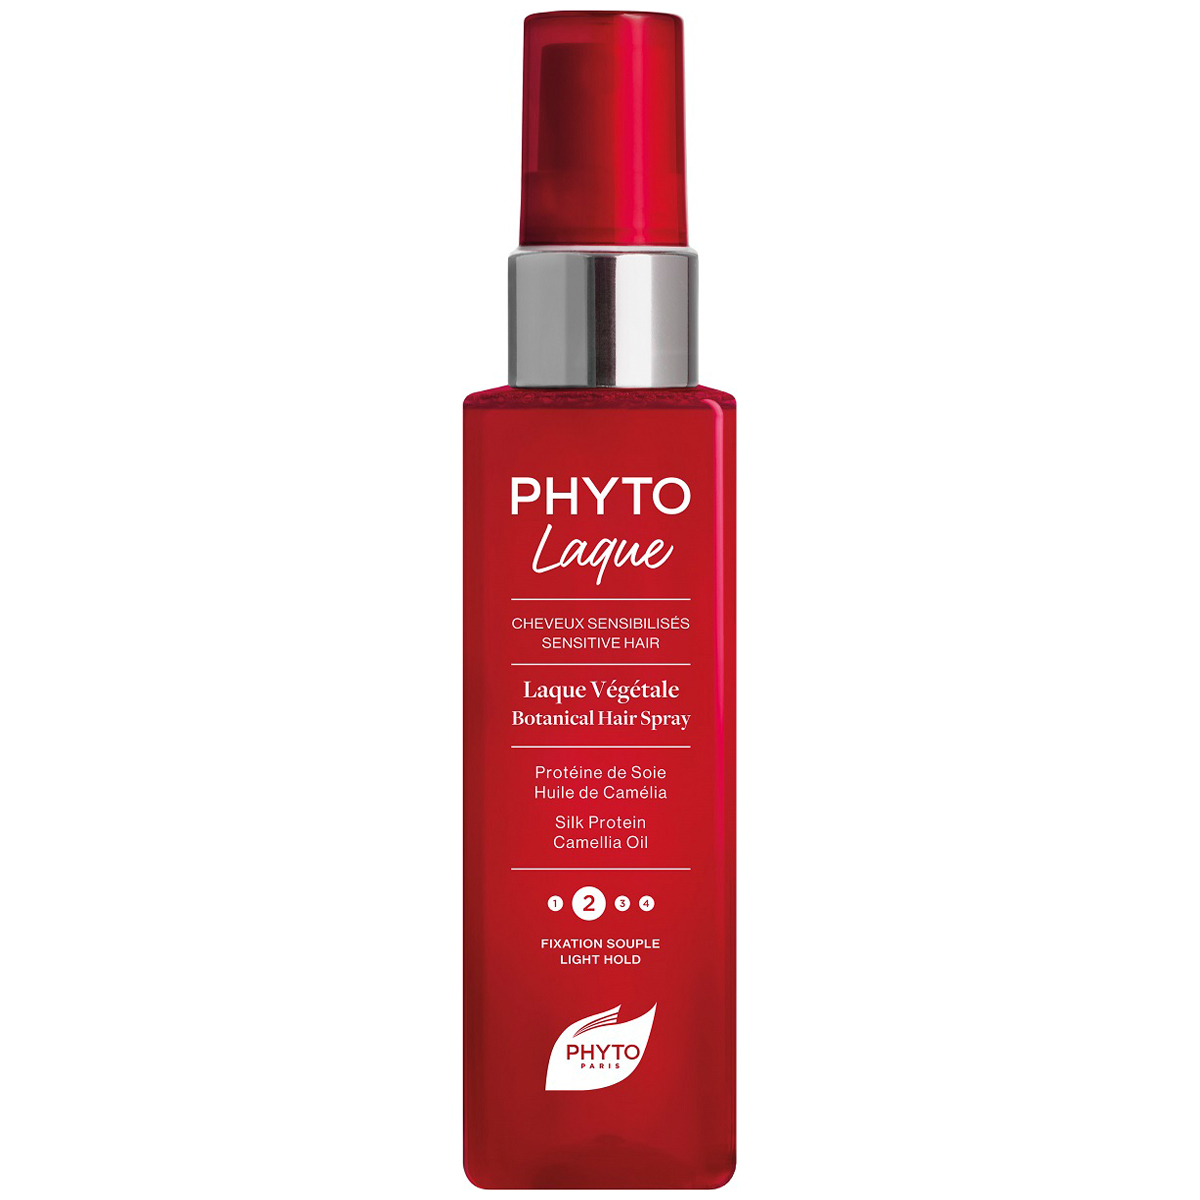 Phyto Растительный лак для волос с легкой фиксацией, 100 мл (Phyto, Phytolaque) phyto phytolaque лак для волос с средней сильной фиксацией 100 мл